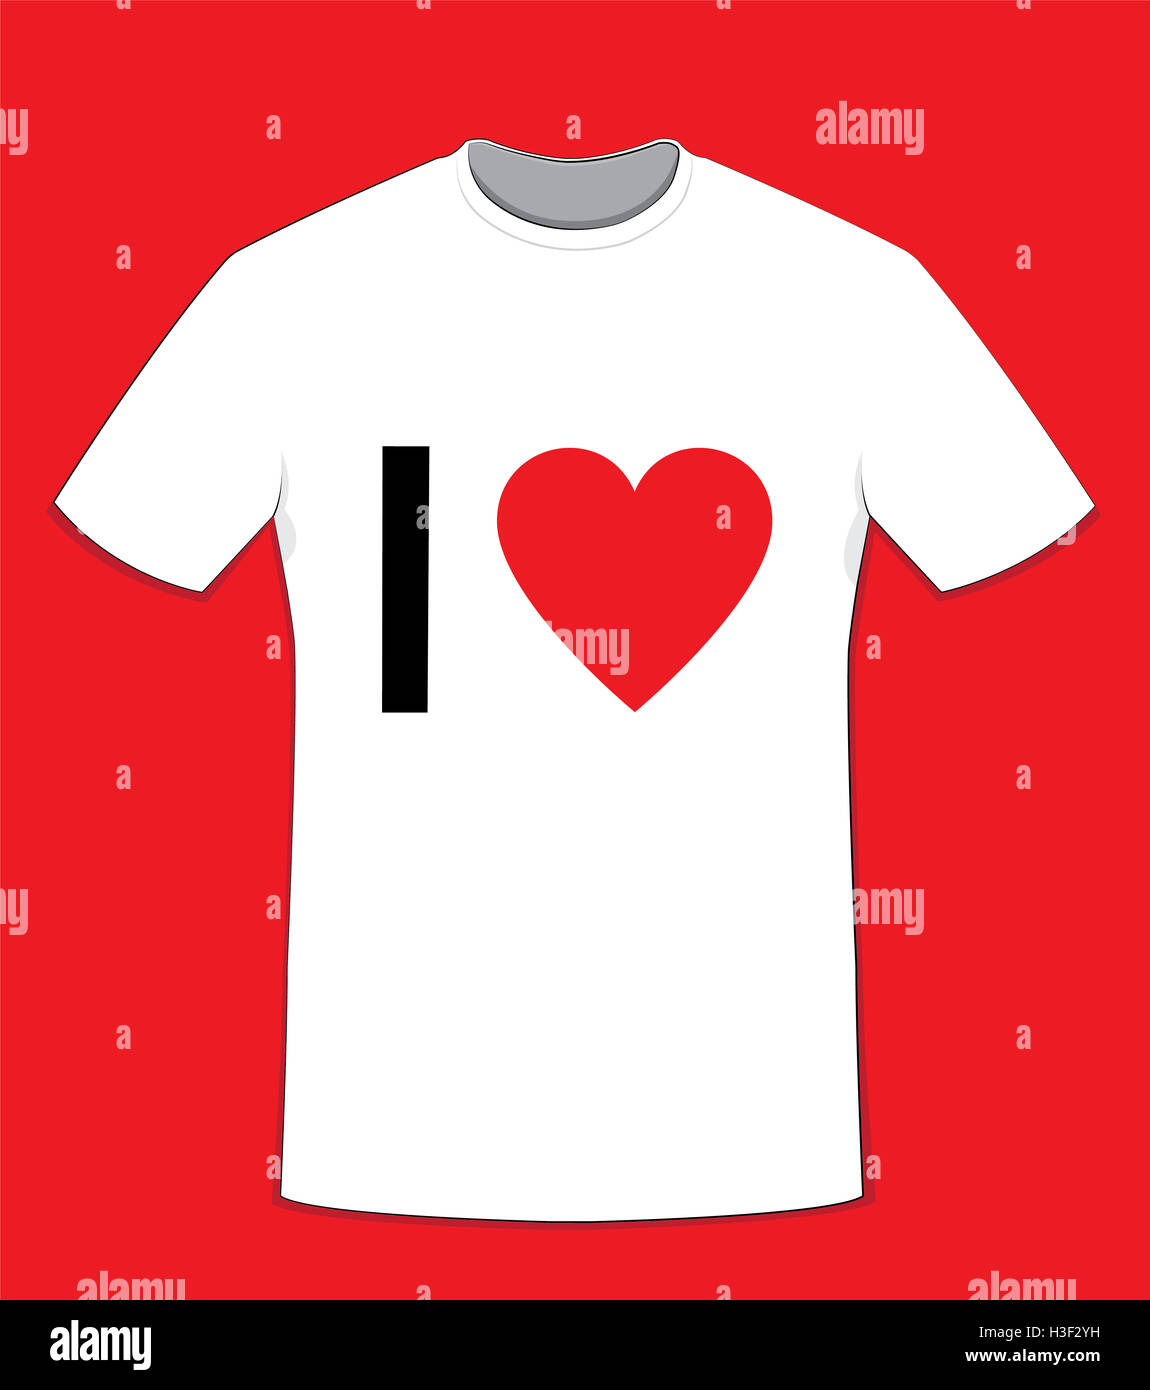 Un vecteur caricature représentant un t-shirt en coton blanc sur fond rouge, 'J'aime' texte sur l'avant et l'espace de copie à personnaliser Banque D'Images